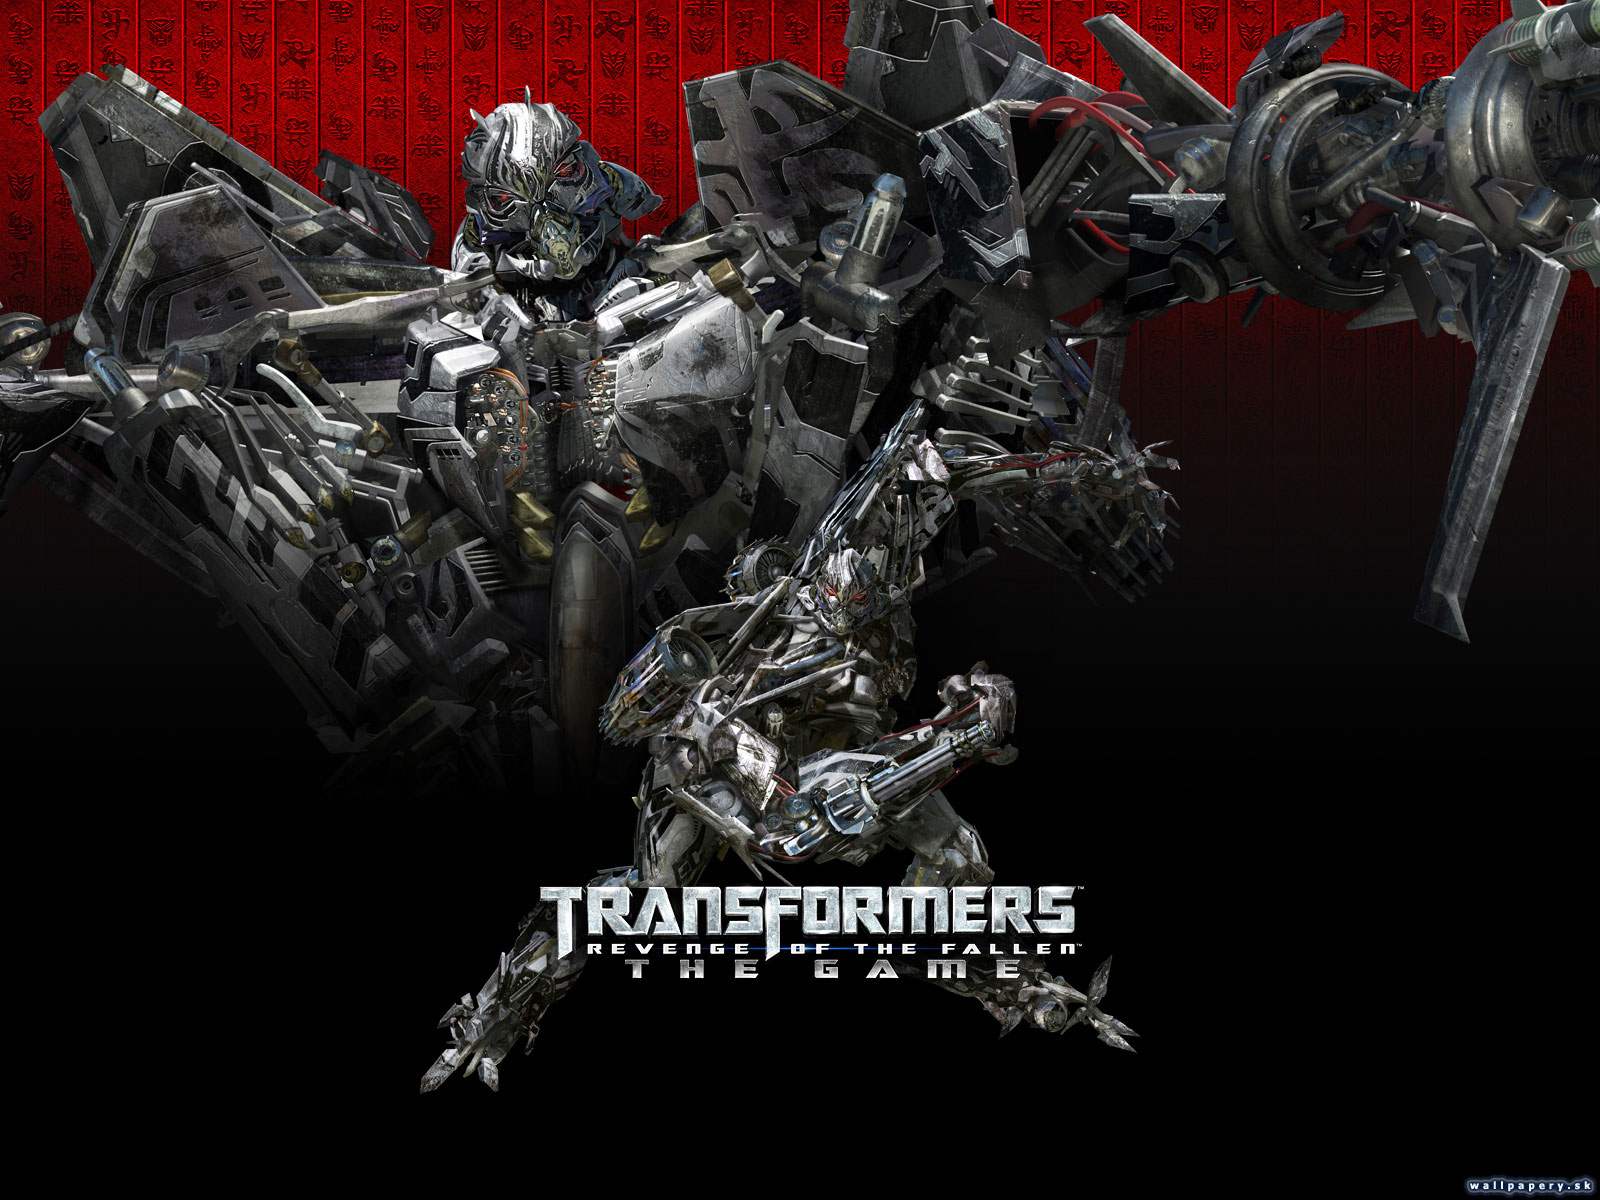 Transformers: Revenge of the Fallen - wallpaper 2